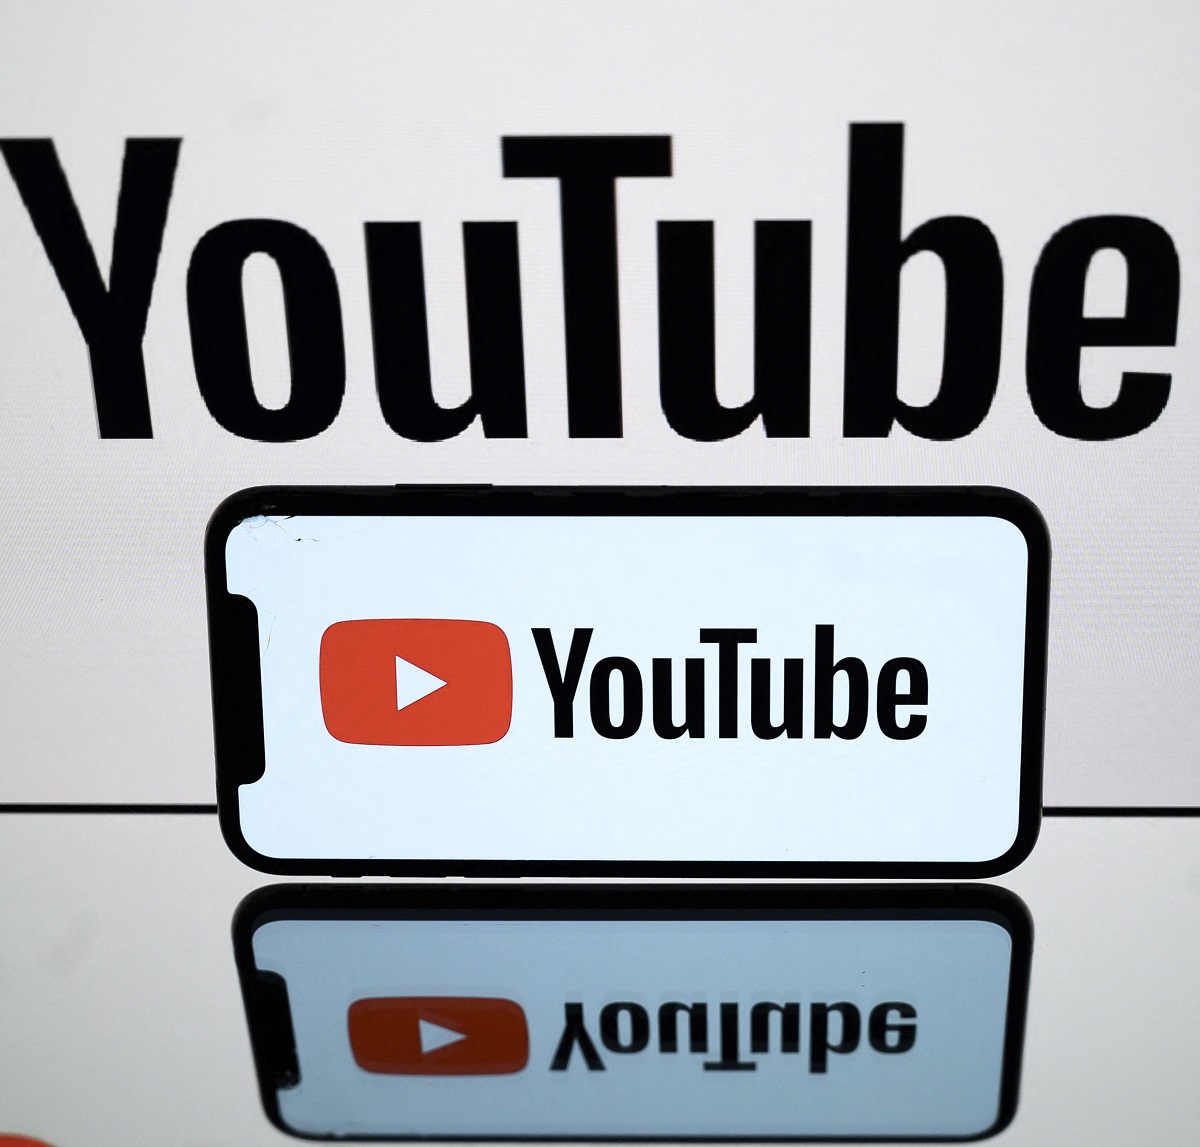 YouTube, en nota sobre cómo escuchar música y bloquear la pantalla gratis